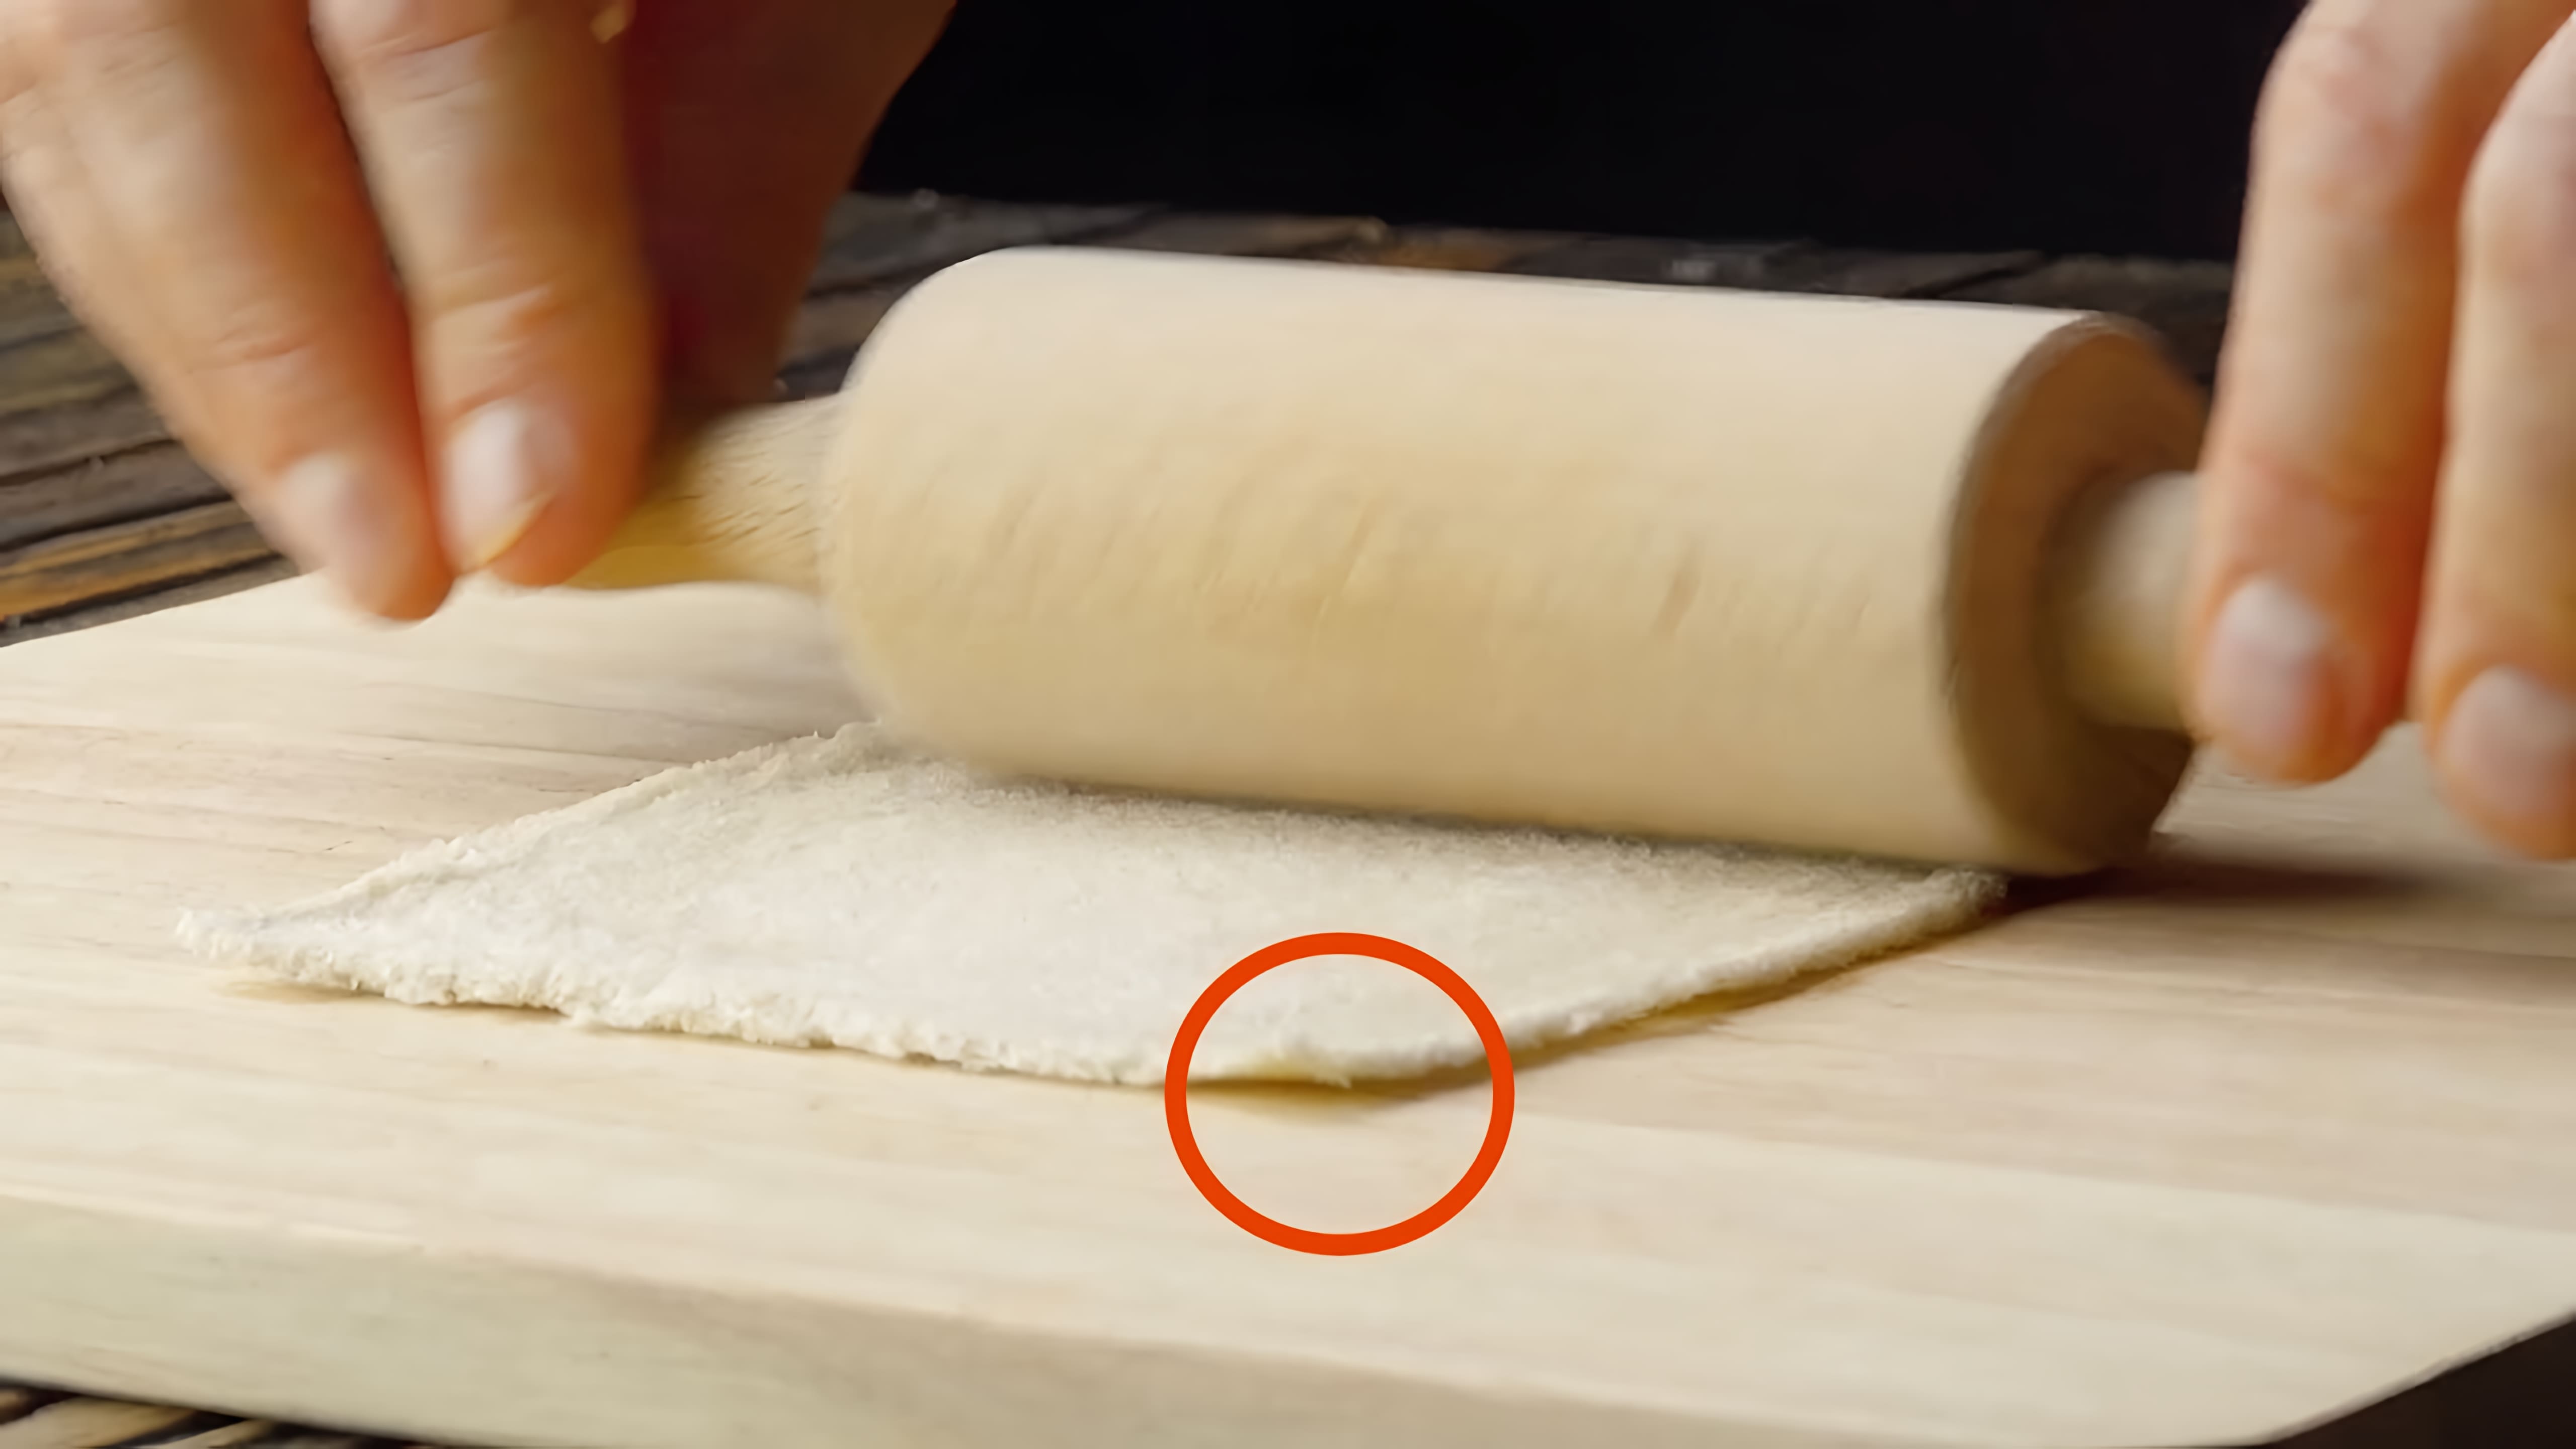 Видео: Раскатываем ломтик хлеба скалкой и добавляем начинку. И это только начало!